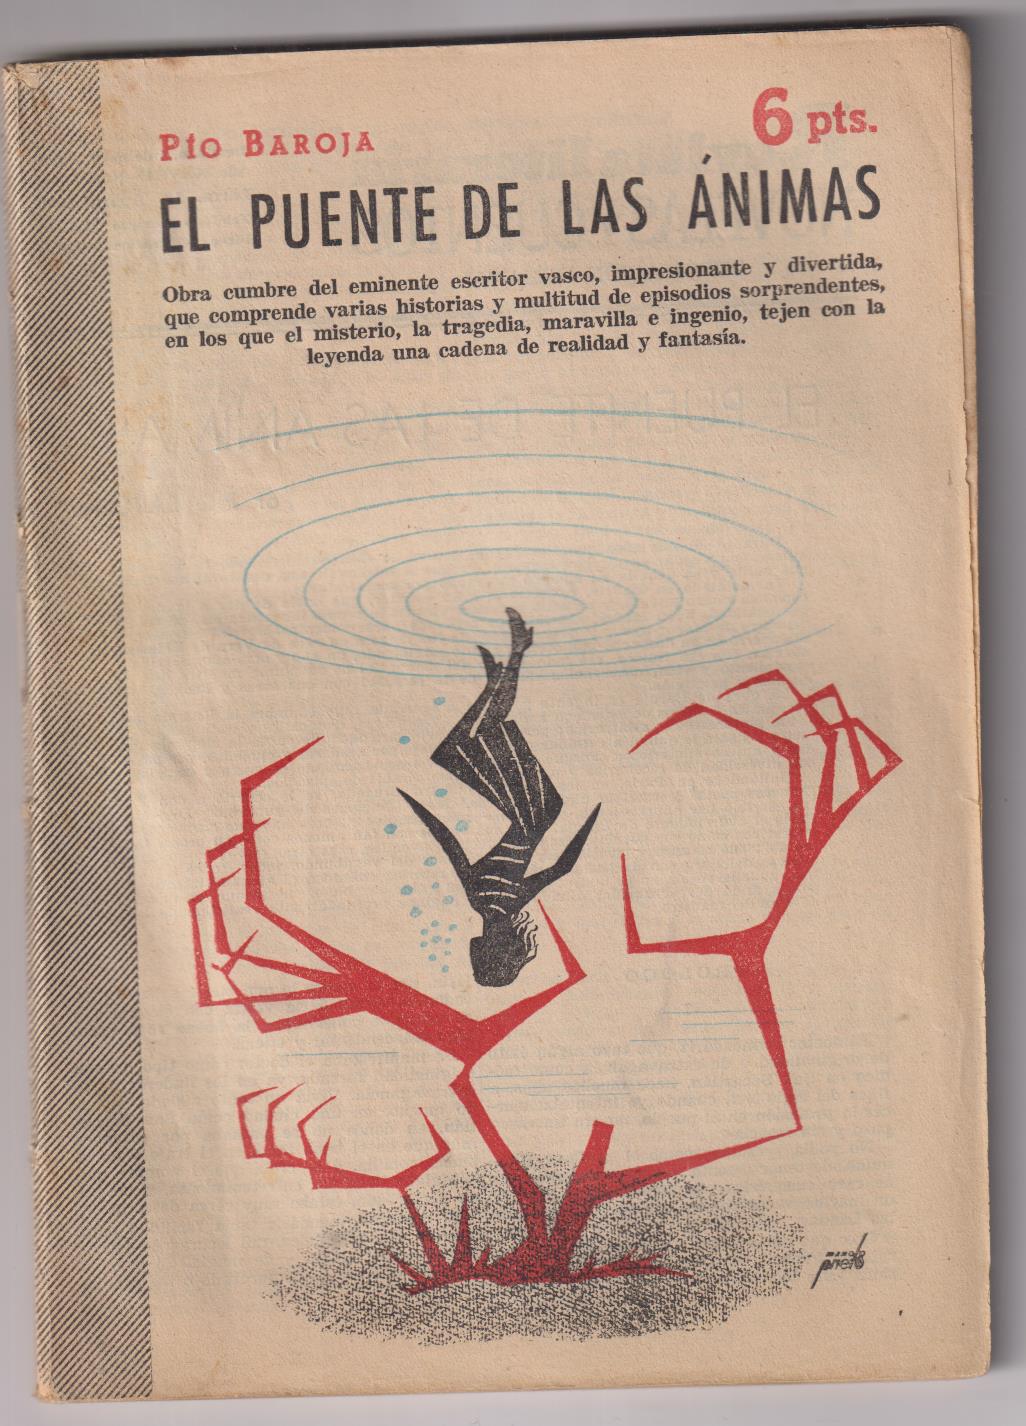 Revista Literaria Novelas y Cuentos nº 1330. El puente de las Ánimas. Pío Baroja, 1956